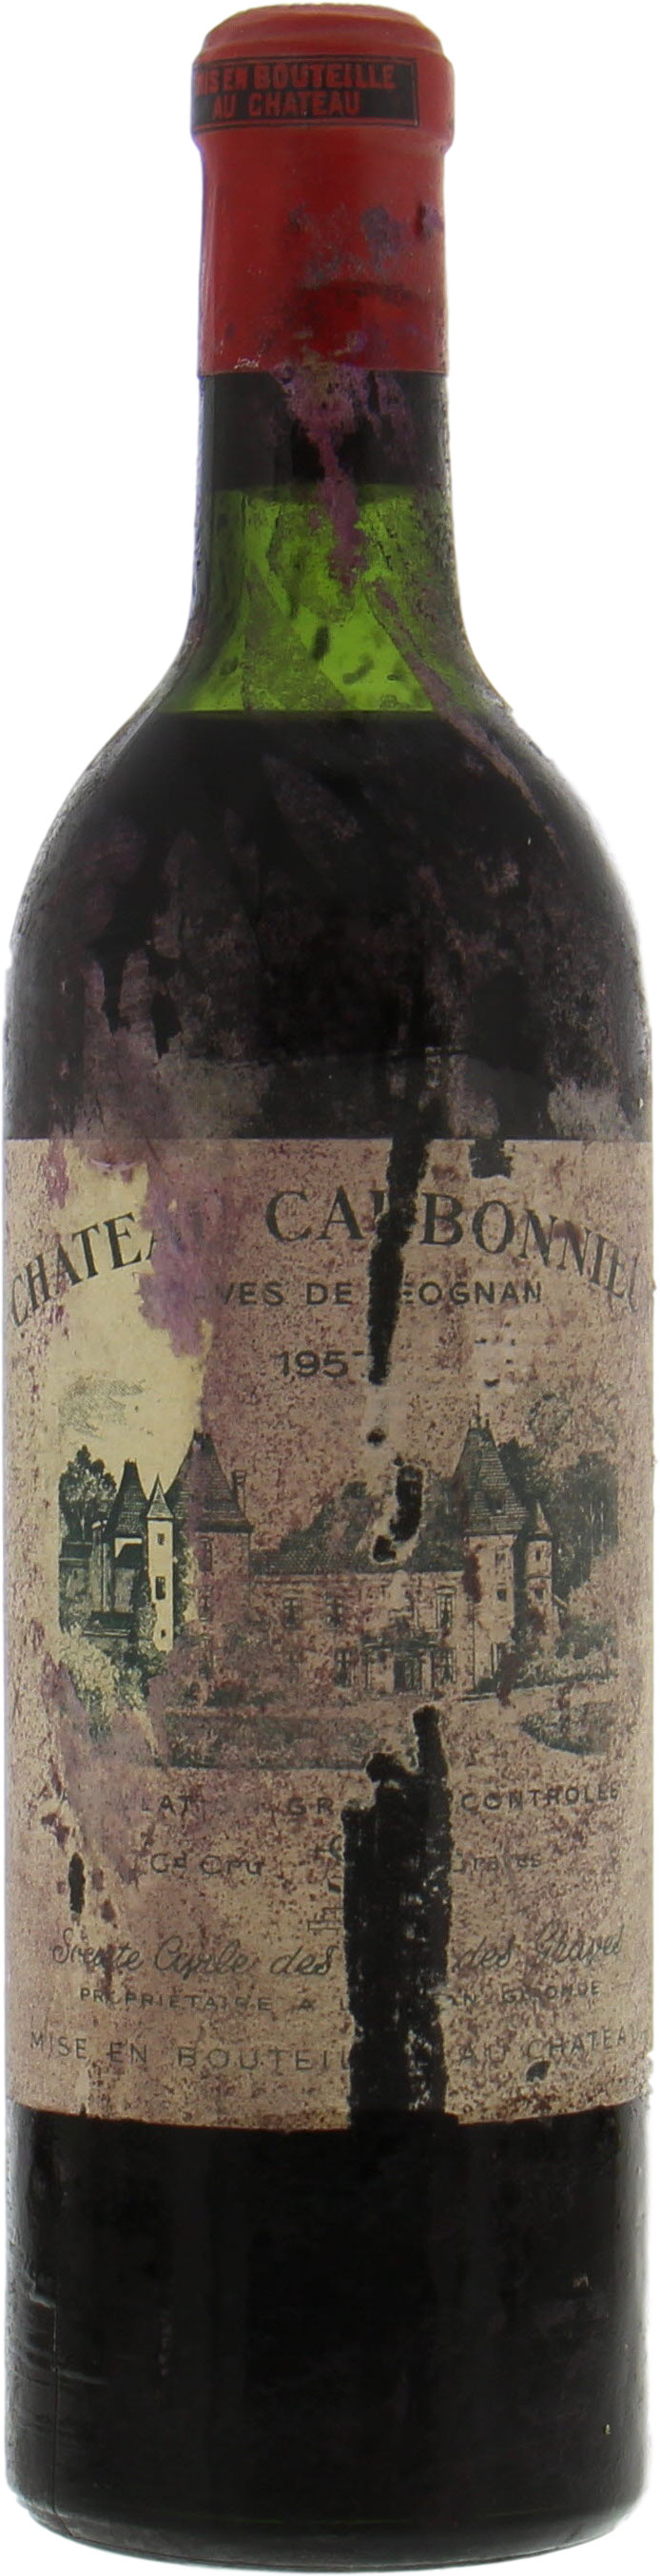 Chateau Carbonnieux - Chateau Carbonnieux 1957